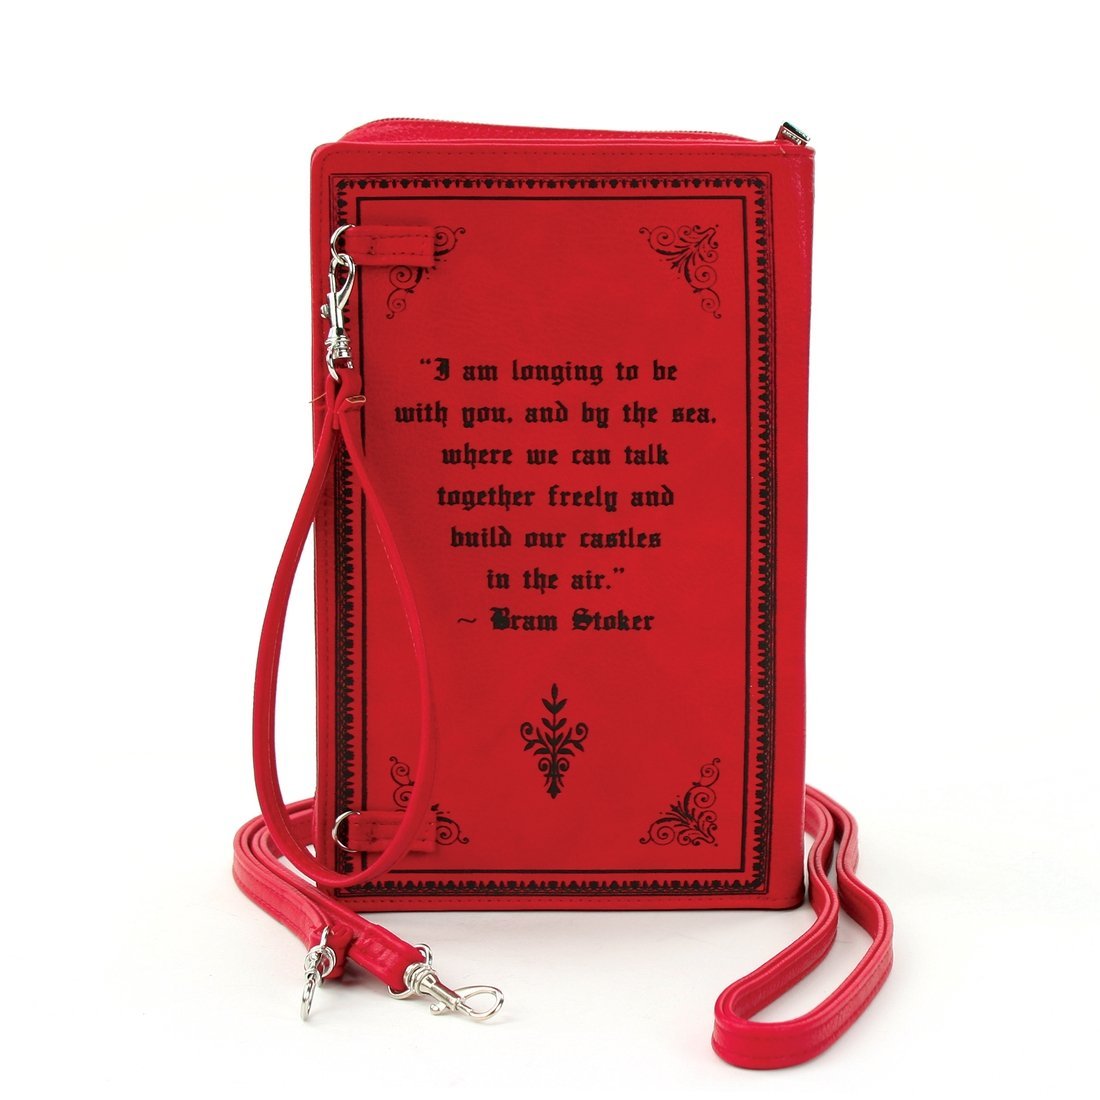 Red Dracula Book Bag-Bag-ESPI LANE